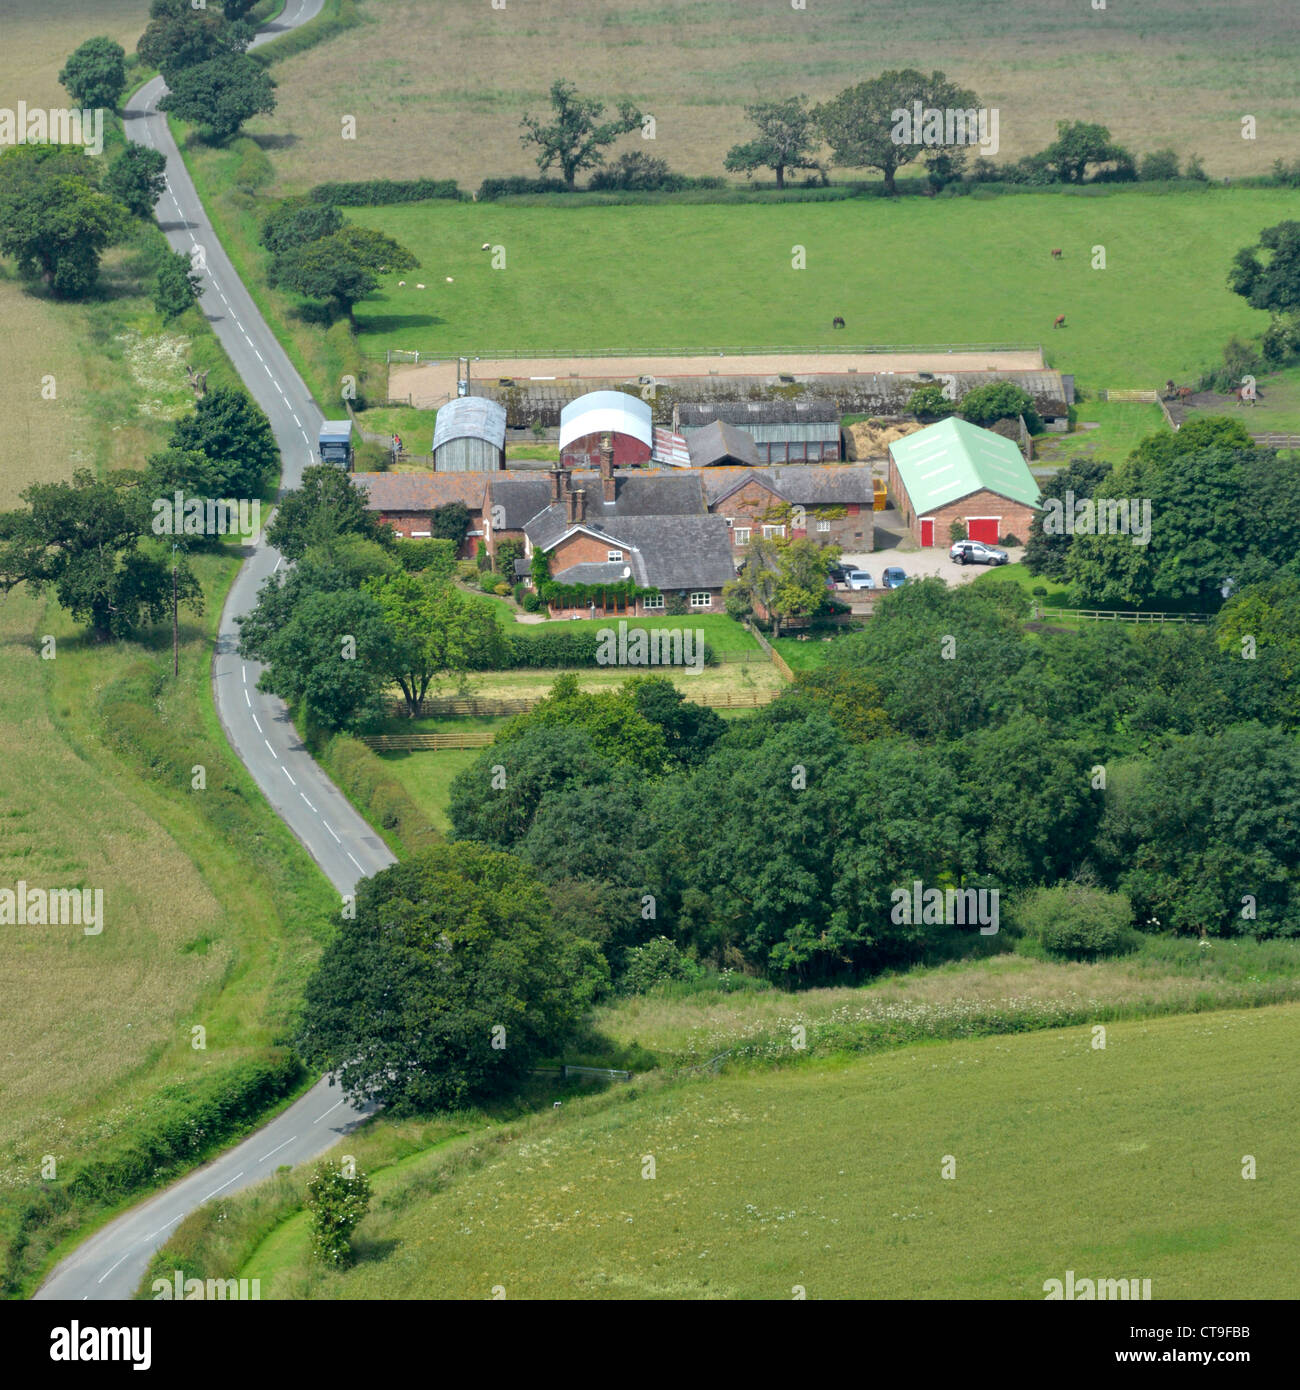 Vue aérienne de l'agriculture d'en haut à bas sur les bâtiments de ferme et ferme avec terres agricoles adjacentes sur la campagne du Cheshire UK des plaines fertiles Banque D'Images